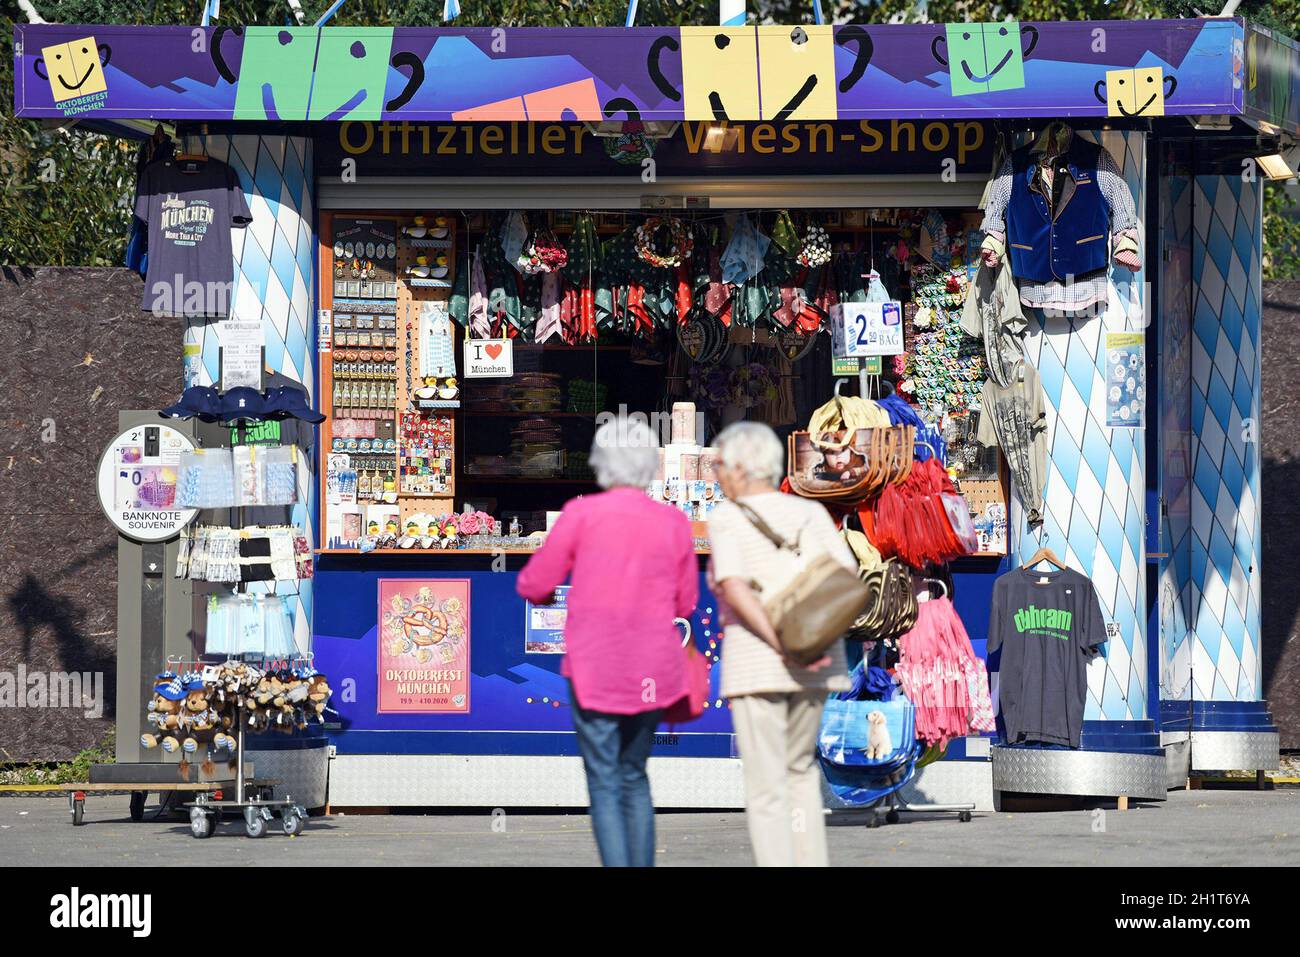 Geöffneter 'Wies'n-Shop' in München trotz des abgesagten Oktoberfestes - Open 'Wies'n-Shop' in Munich despite the canceled Oktoberfest Stock Photo